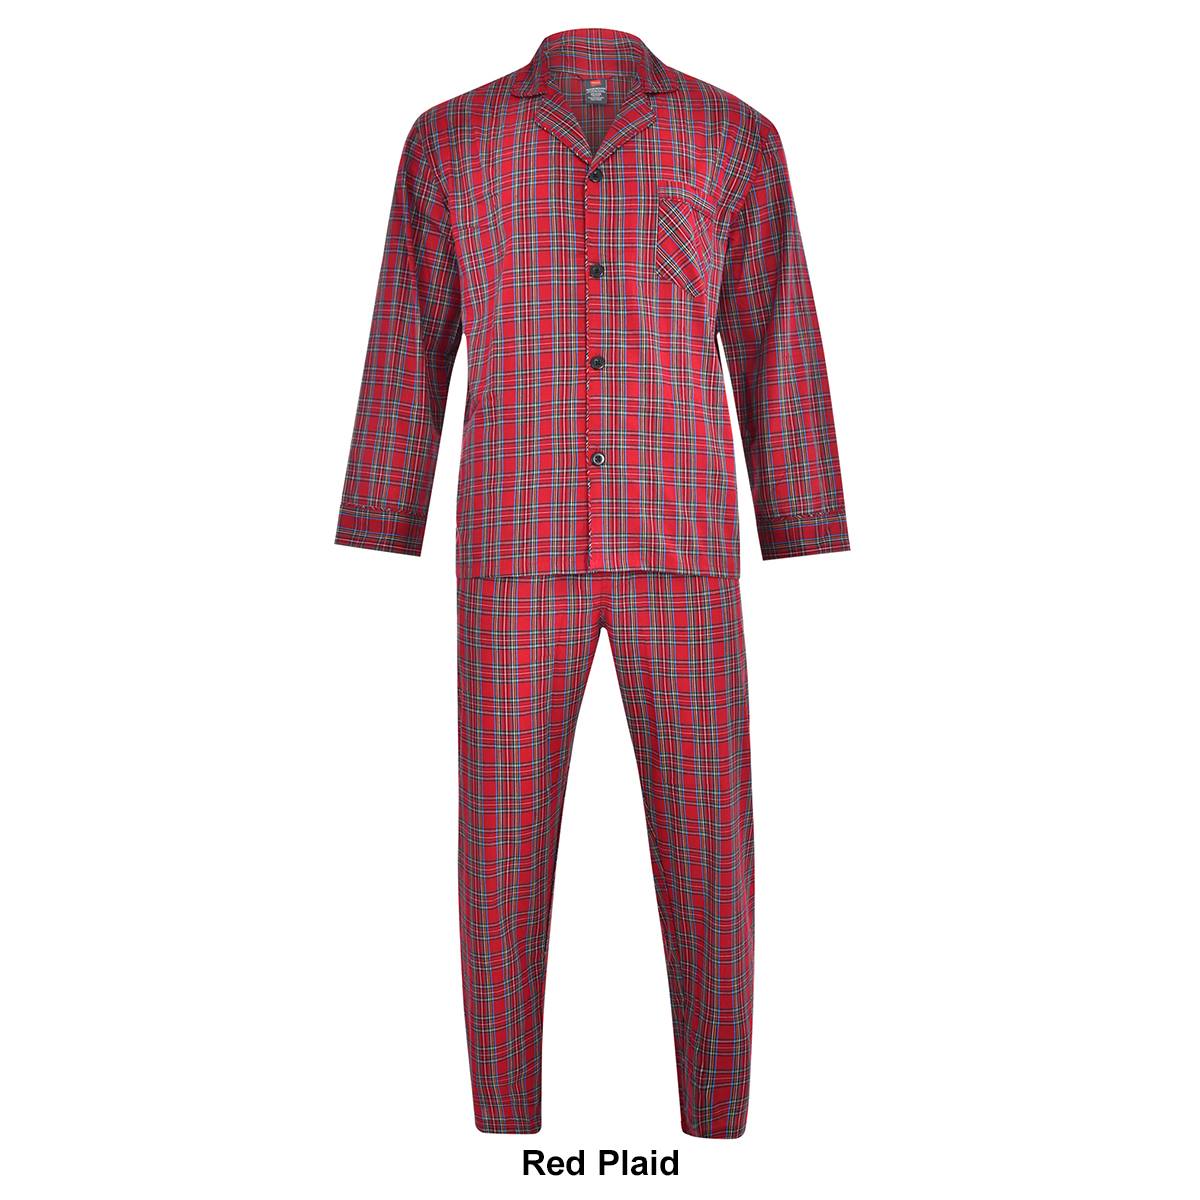 Mens Hanes(R) Ultimate(R) Woven Plaid Pajama Set